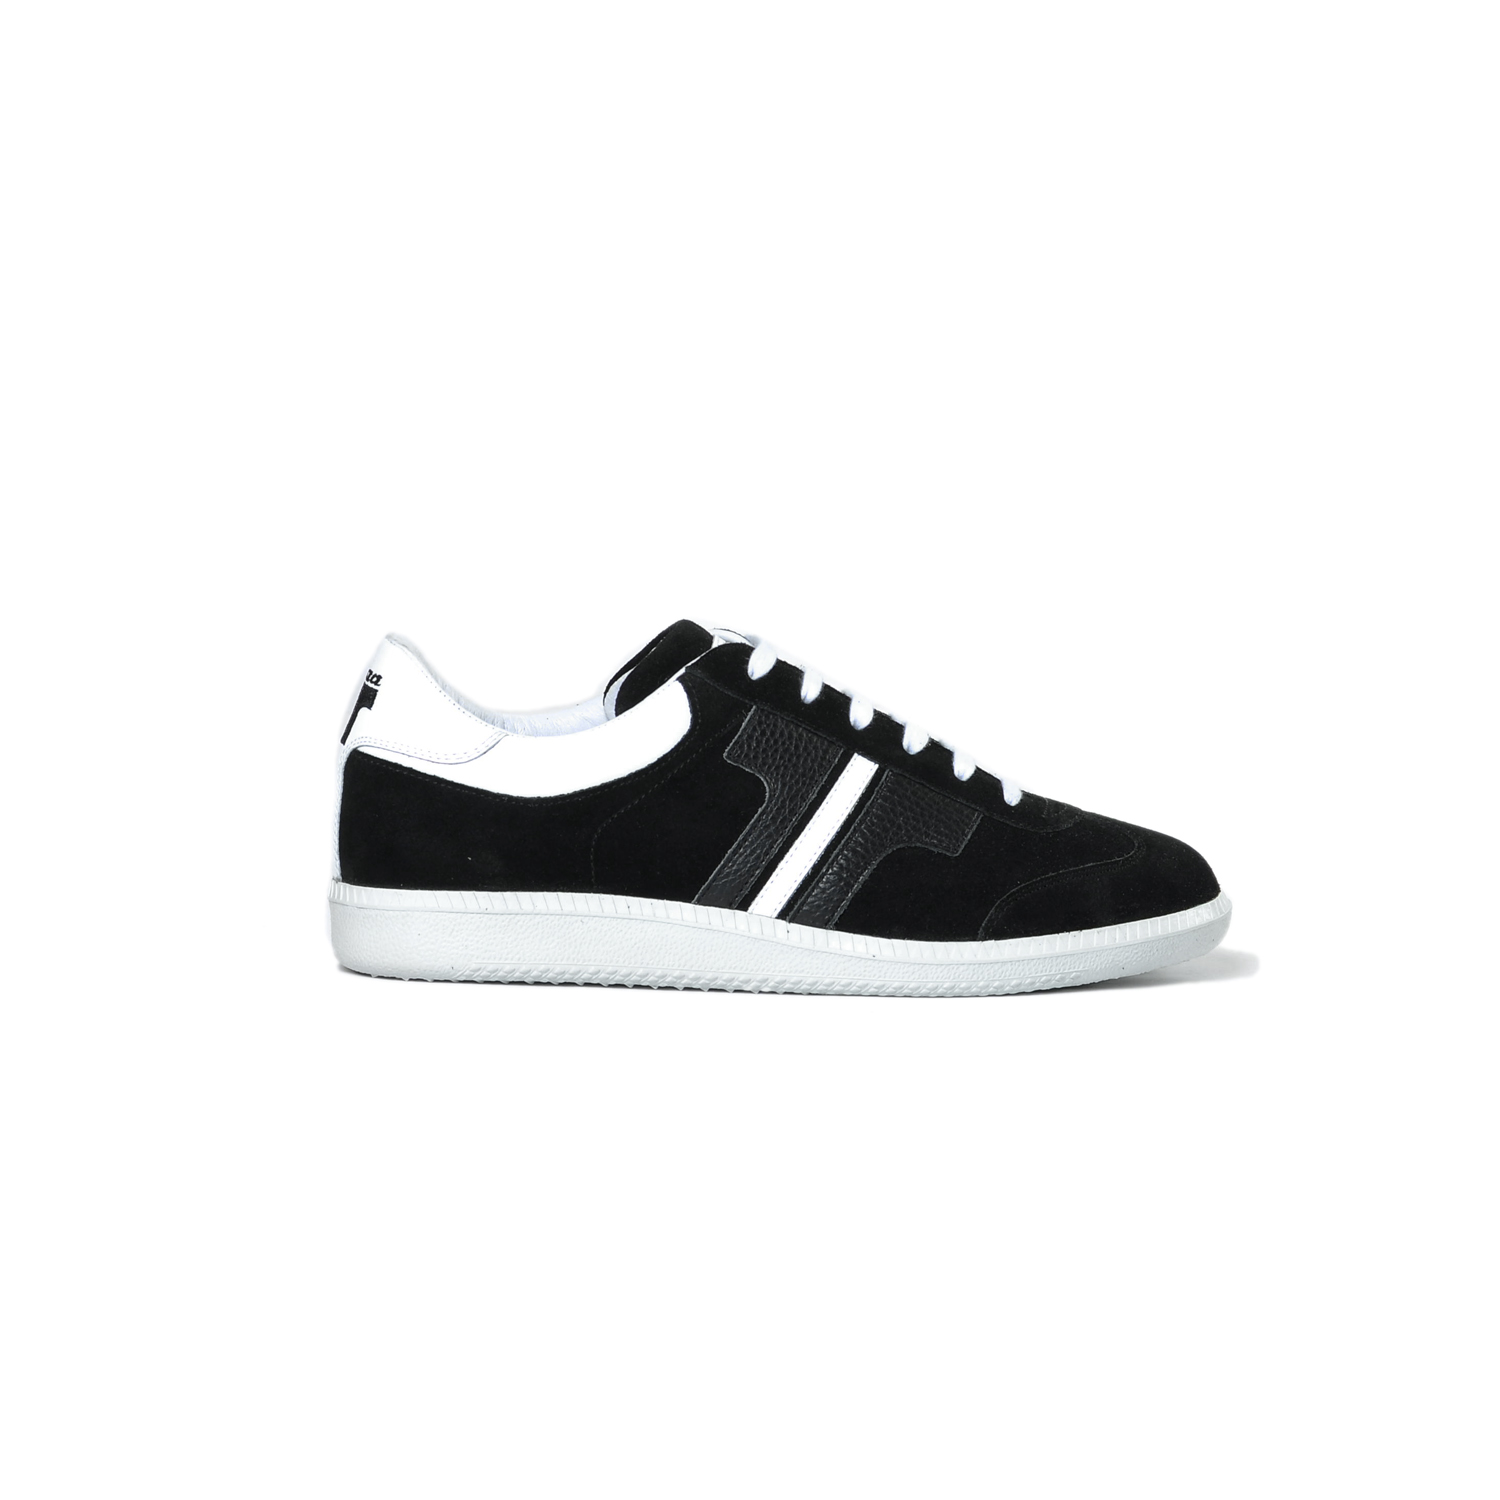 Tisza cipő - Compakt - Fekete-fehér